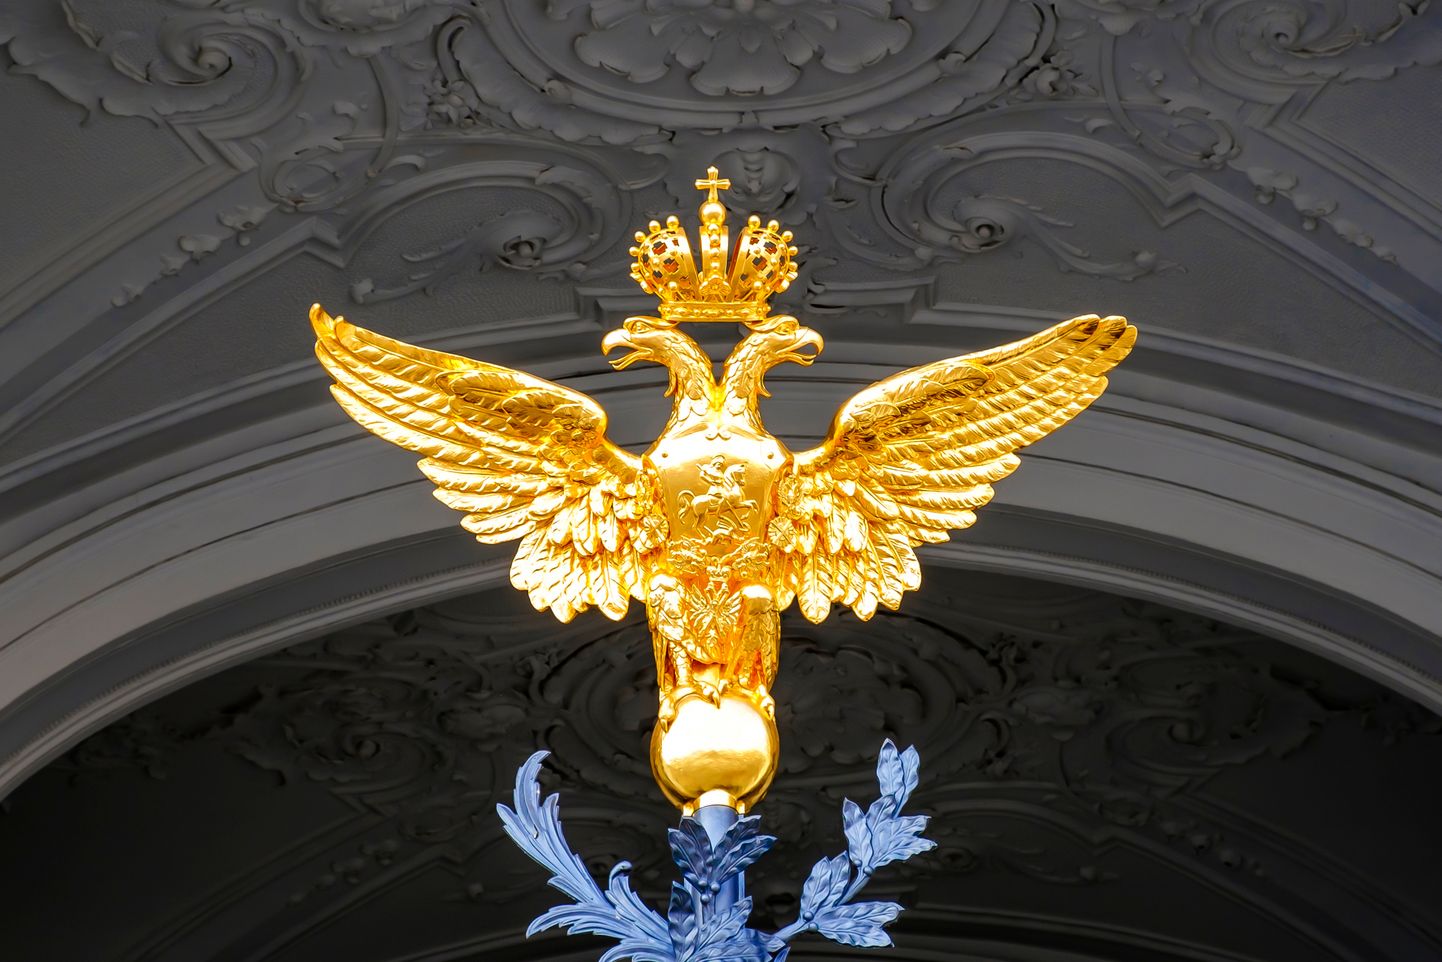 Nii keiserliku Venemaa kui Vene Föderatsiooni vapilind Peterburis Ermitaaži lossi metallväravatel. Tegemist on kuldse kahepäise kotkaga kellel on kroon. Ta keskel on Püha Jüri lohet tapmas